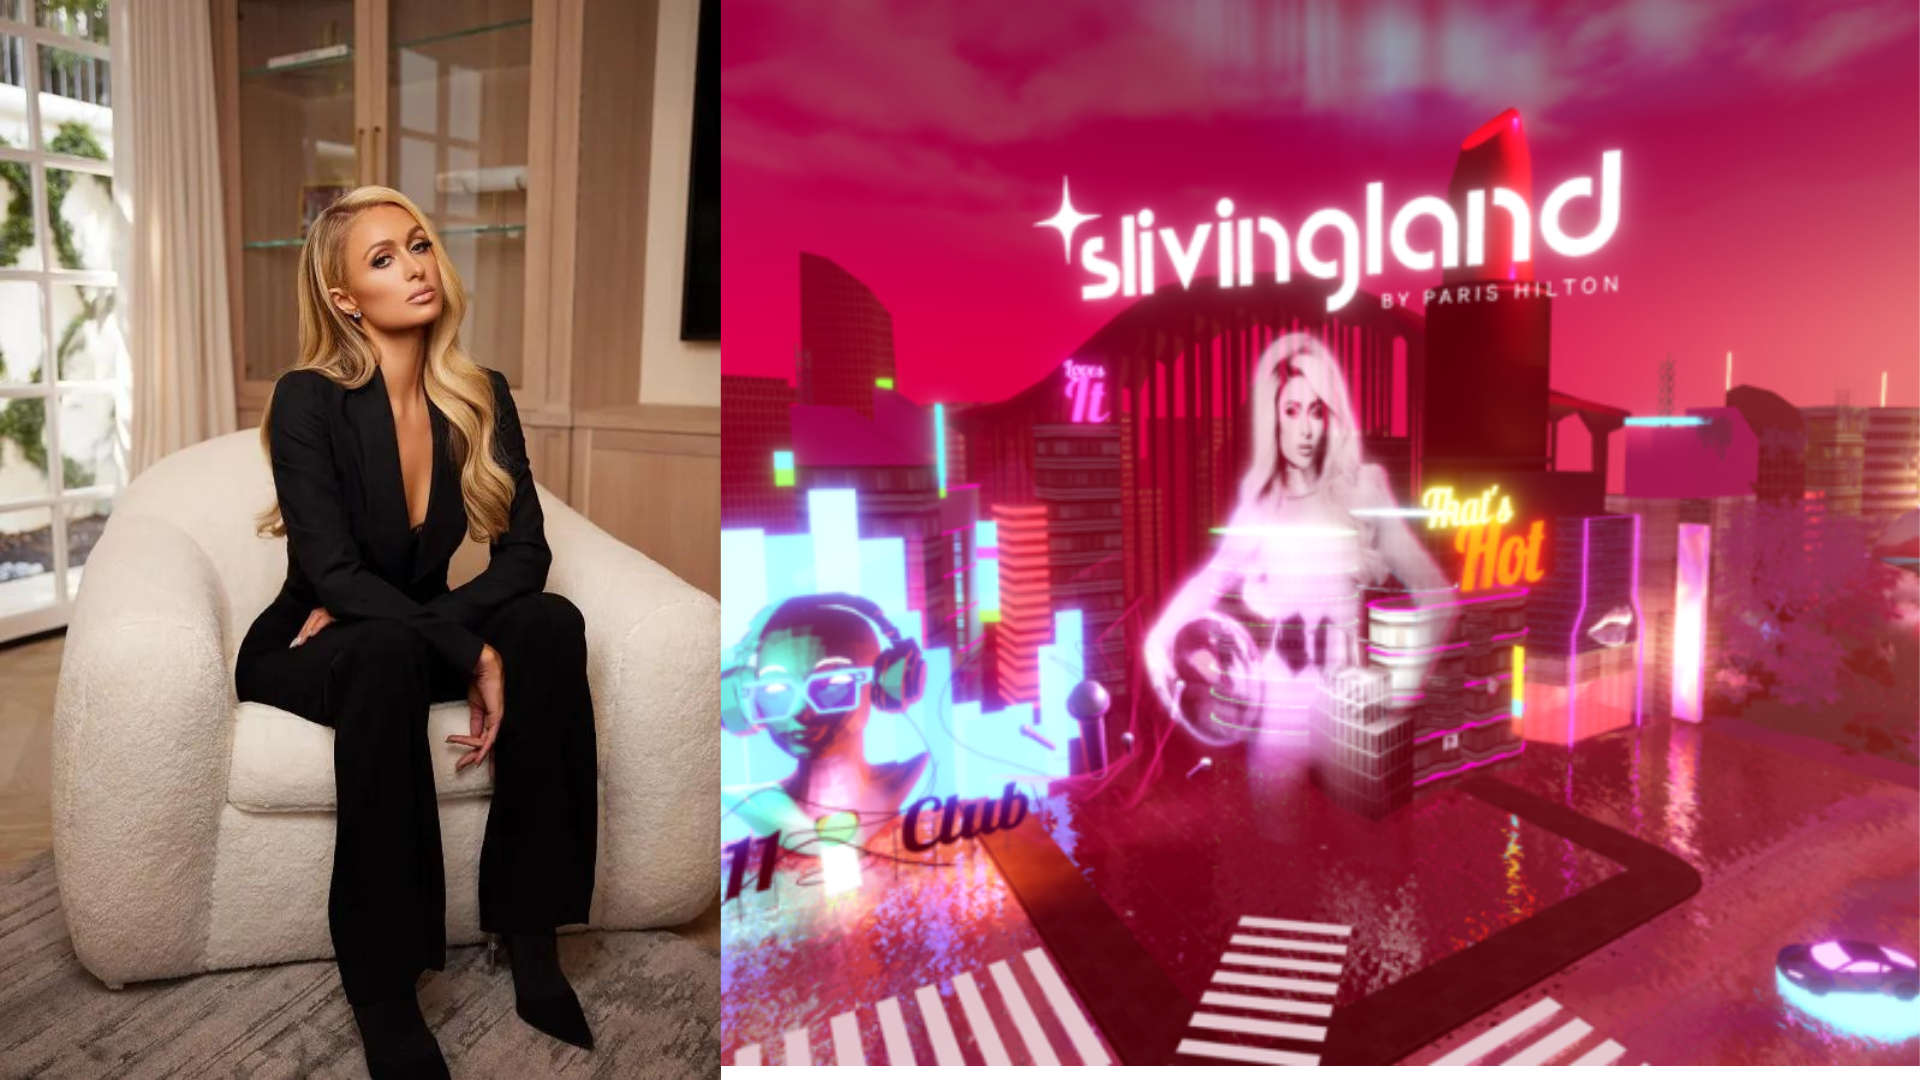 Paris Hilton Launches Slivingland on Roblox